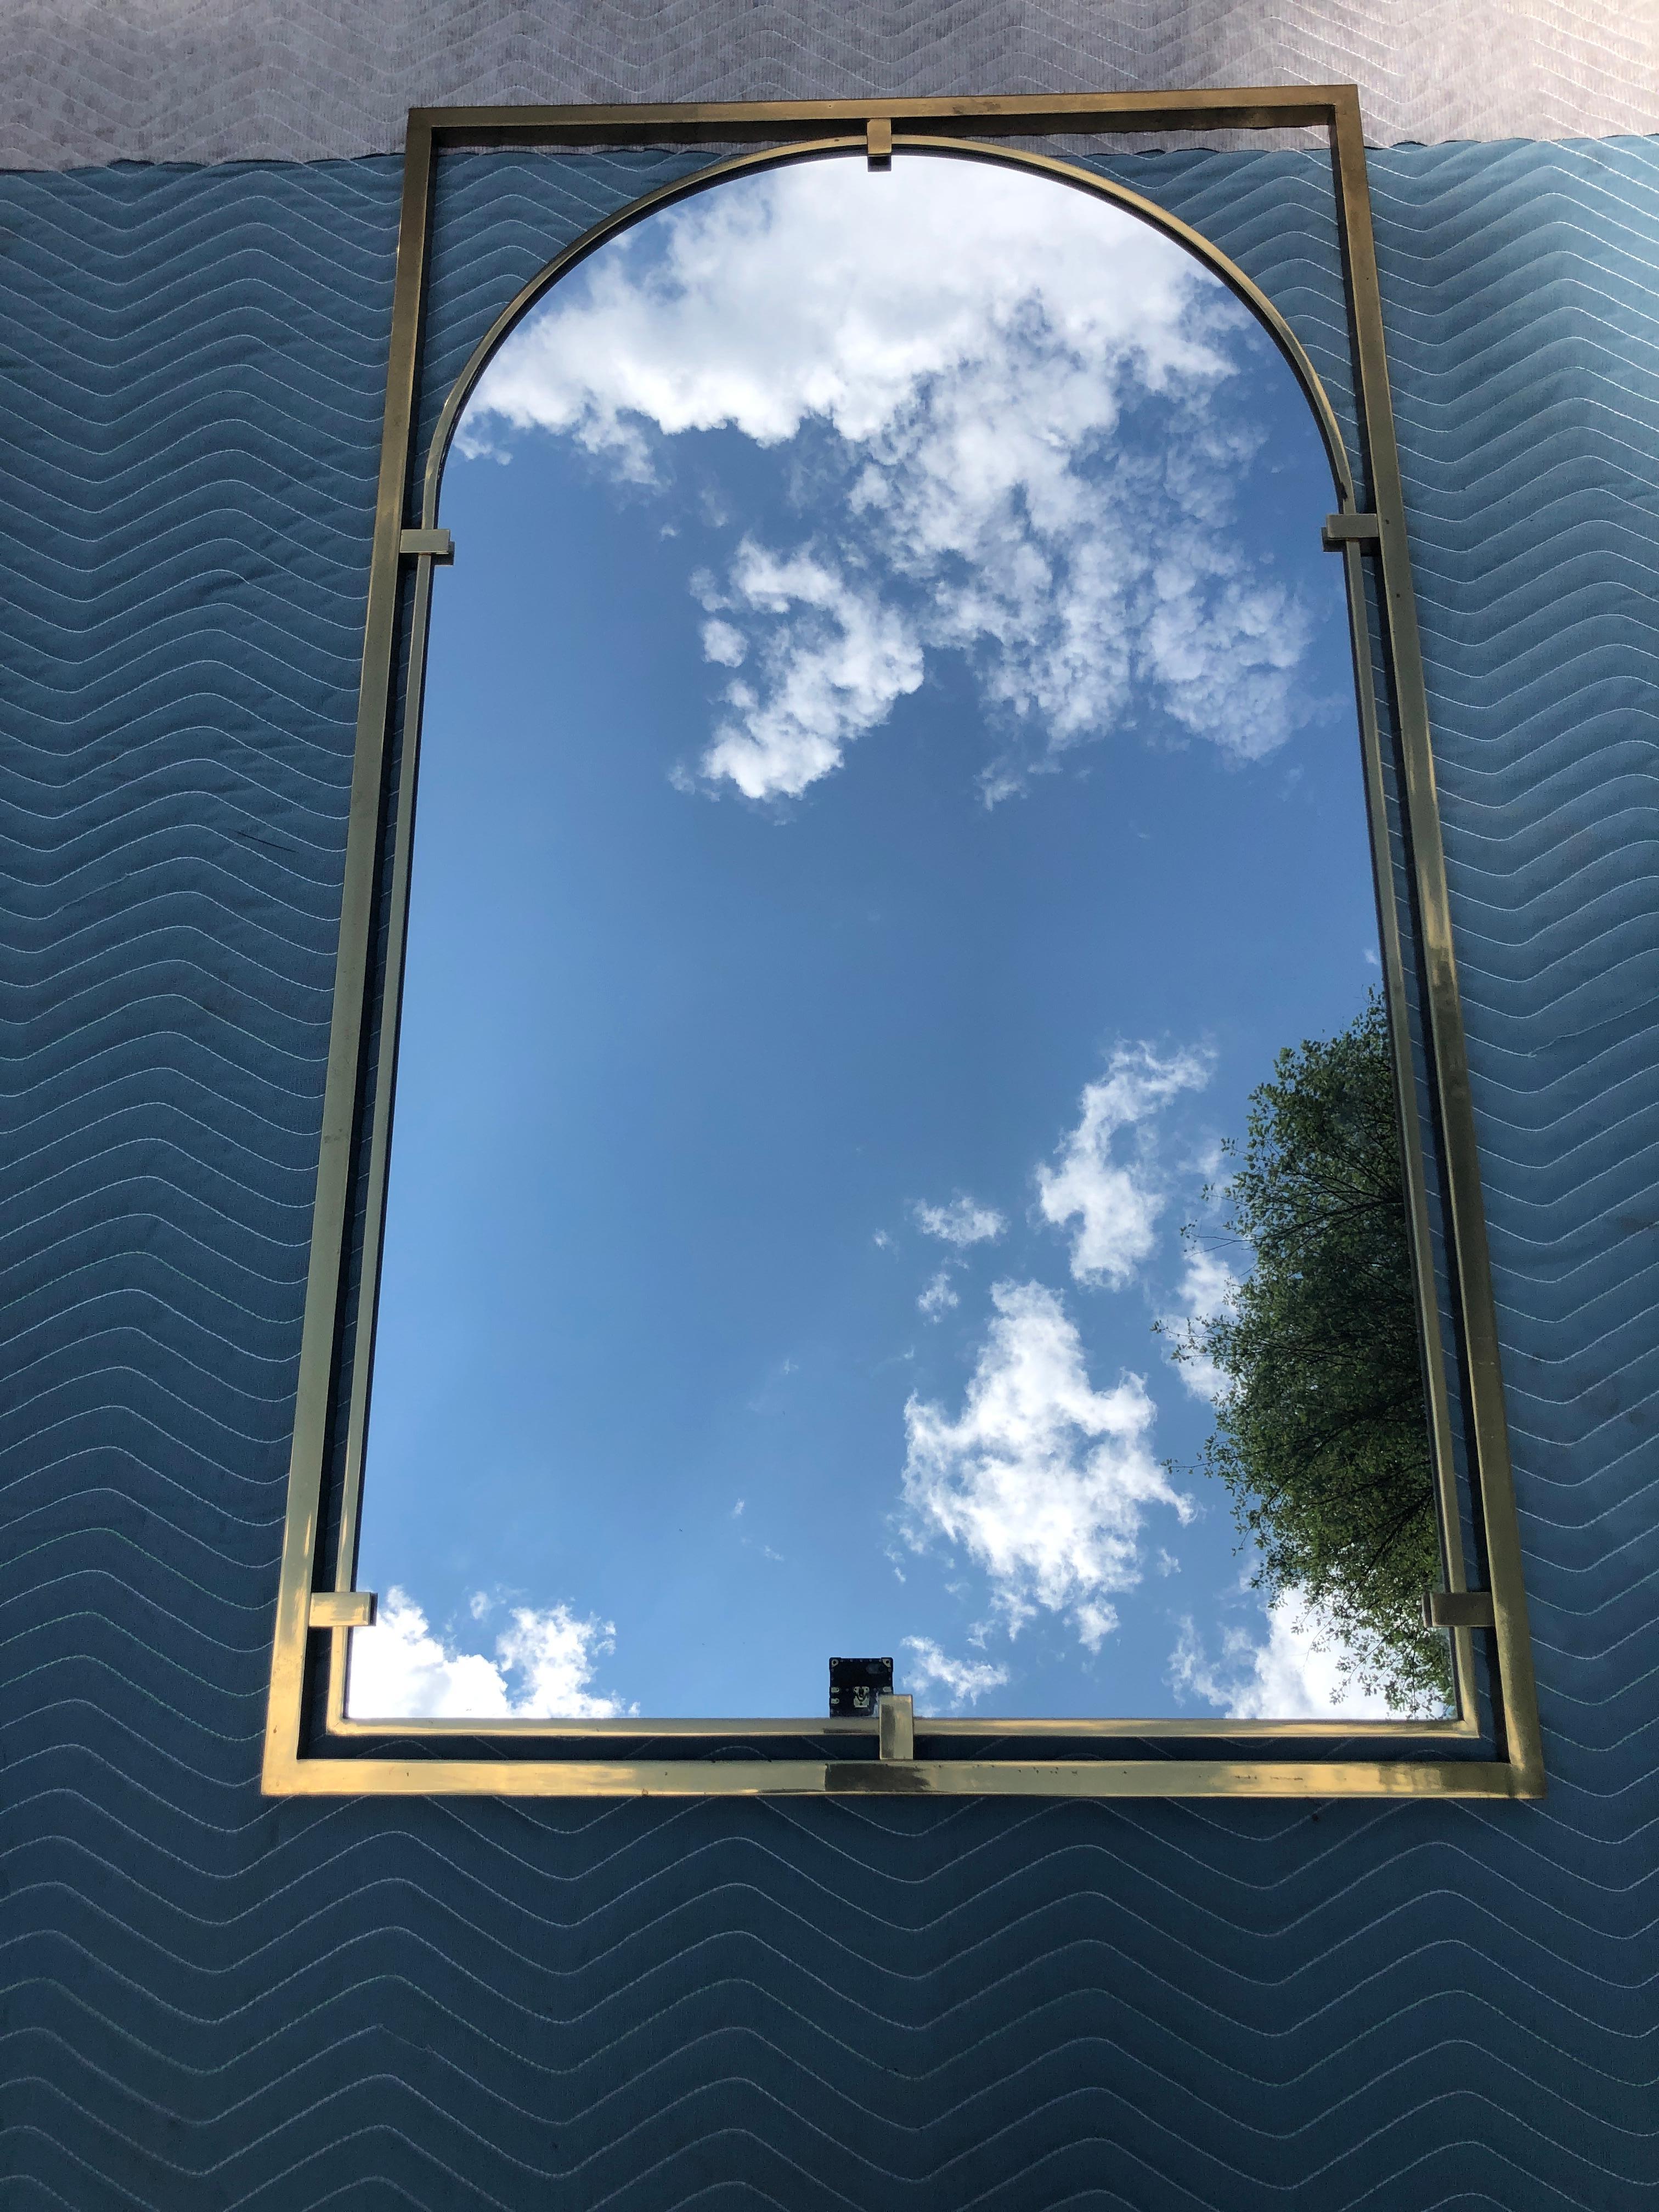  Dramatique et substantiel miroir en laiton massif avec arc moderne incurvé dans un cadre rectangulaire flottant, conçu par John Widdicomb dans les années 1960. Cette pièce mesure 47